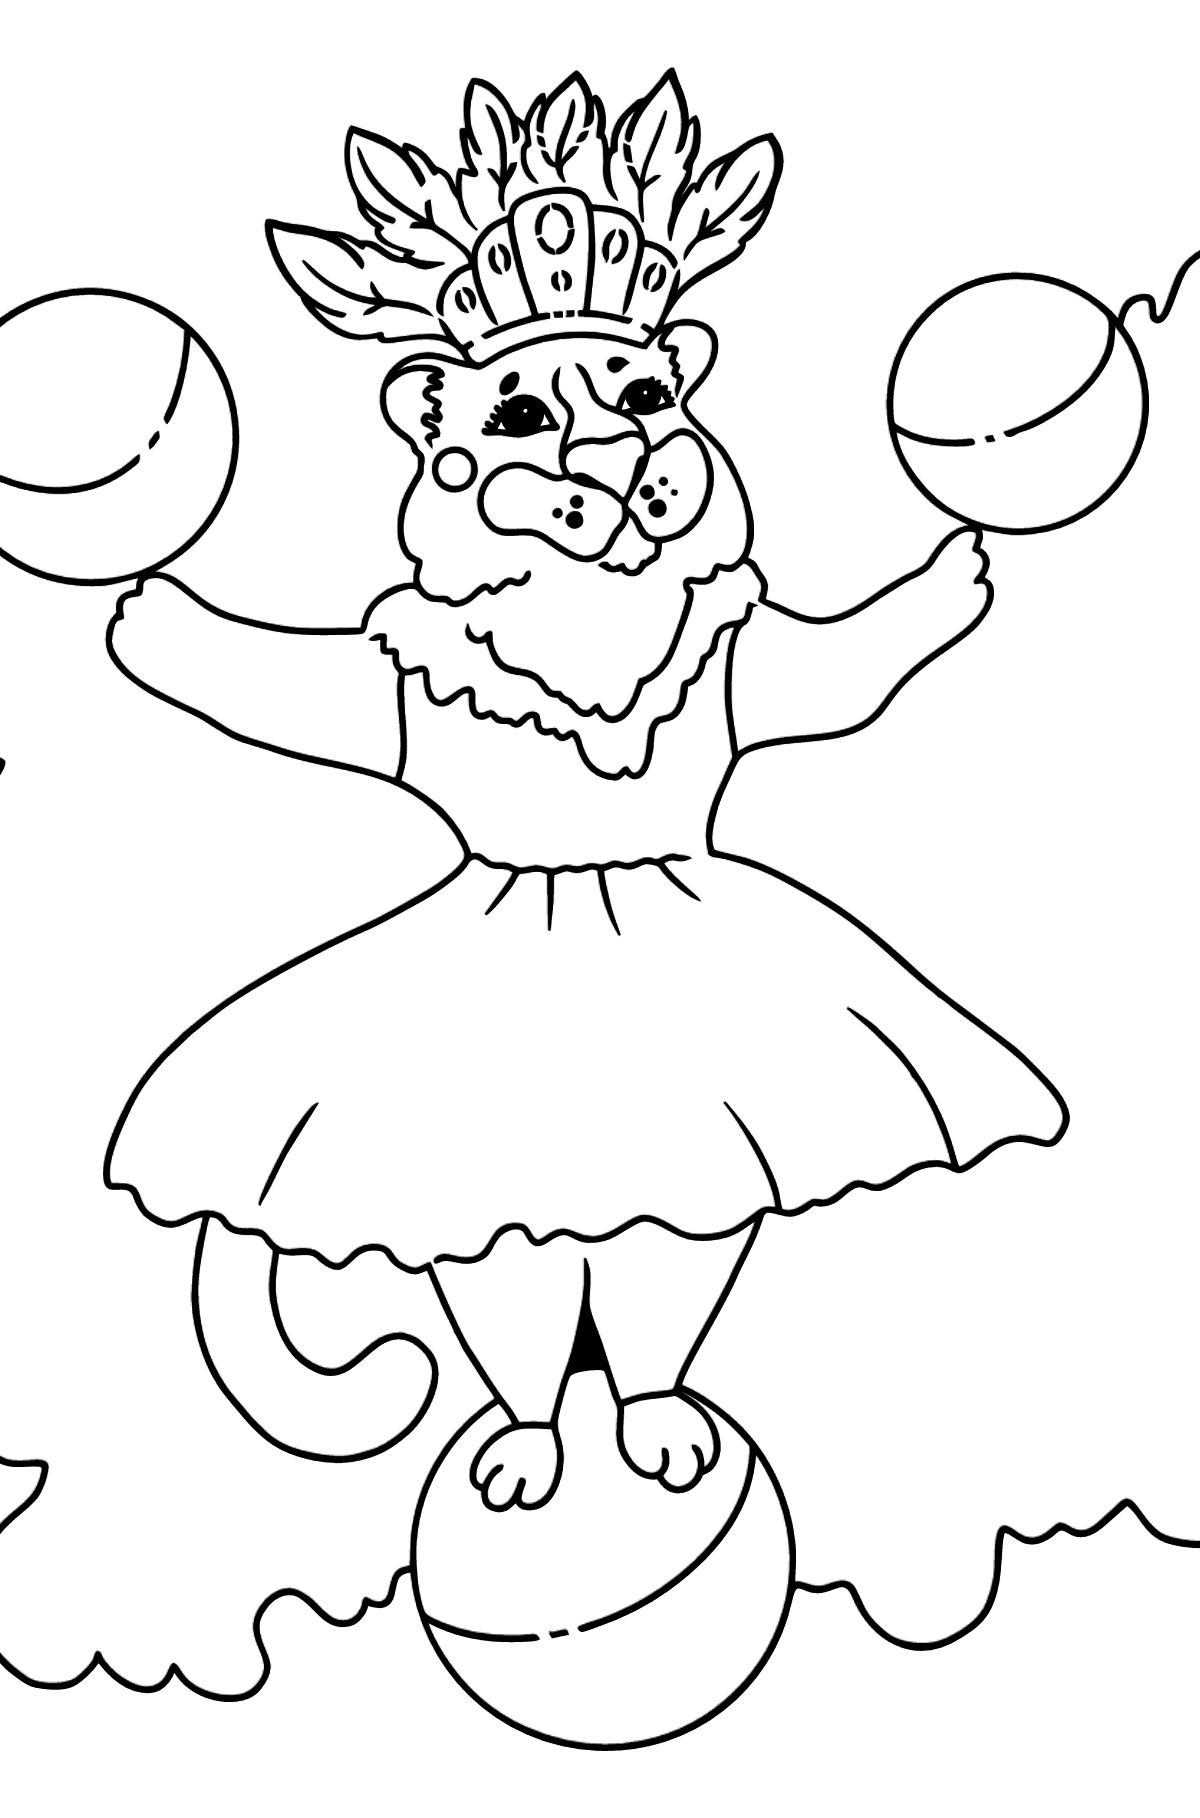 Desenho de tigresa no circo para colorir (fácil) - Imagens para Colorir para Crianças